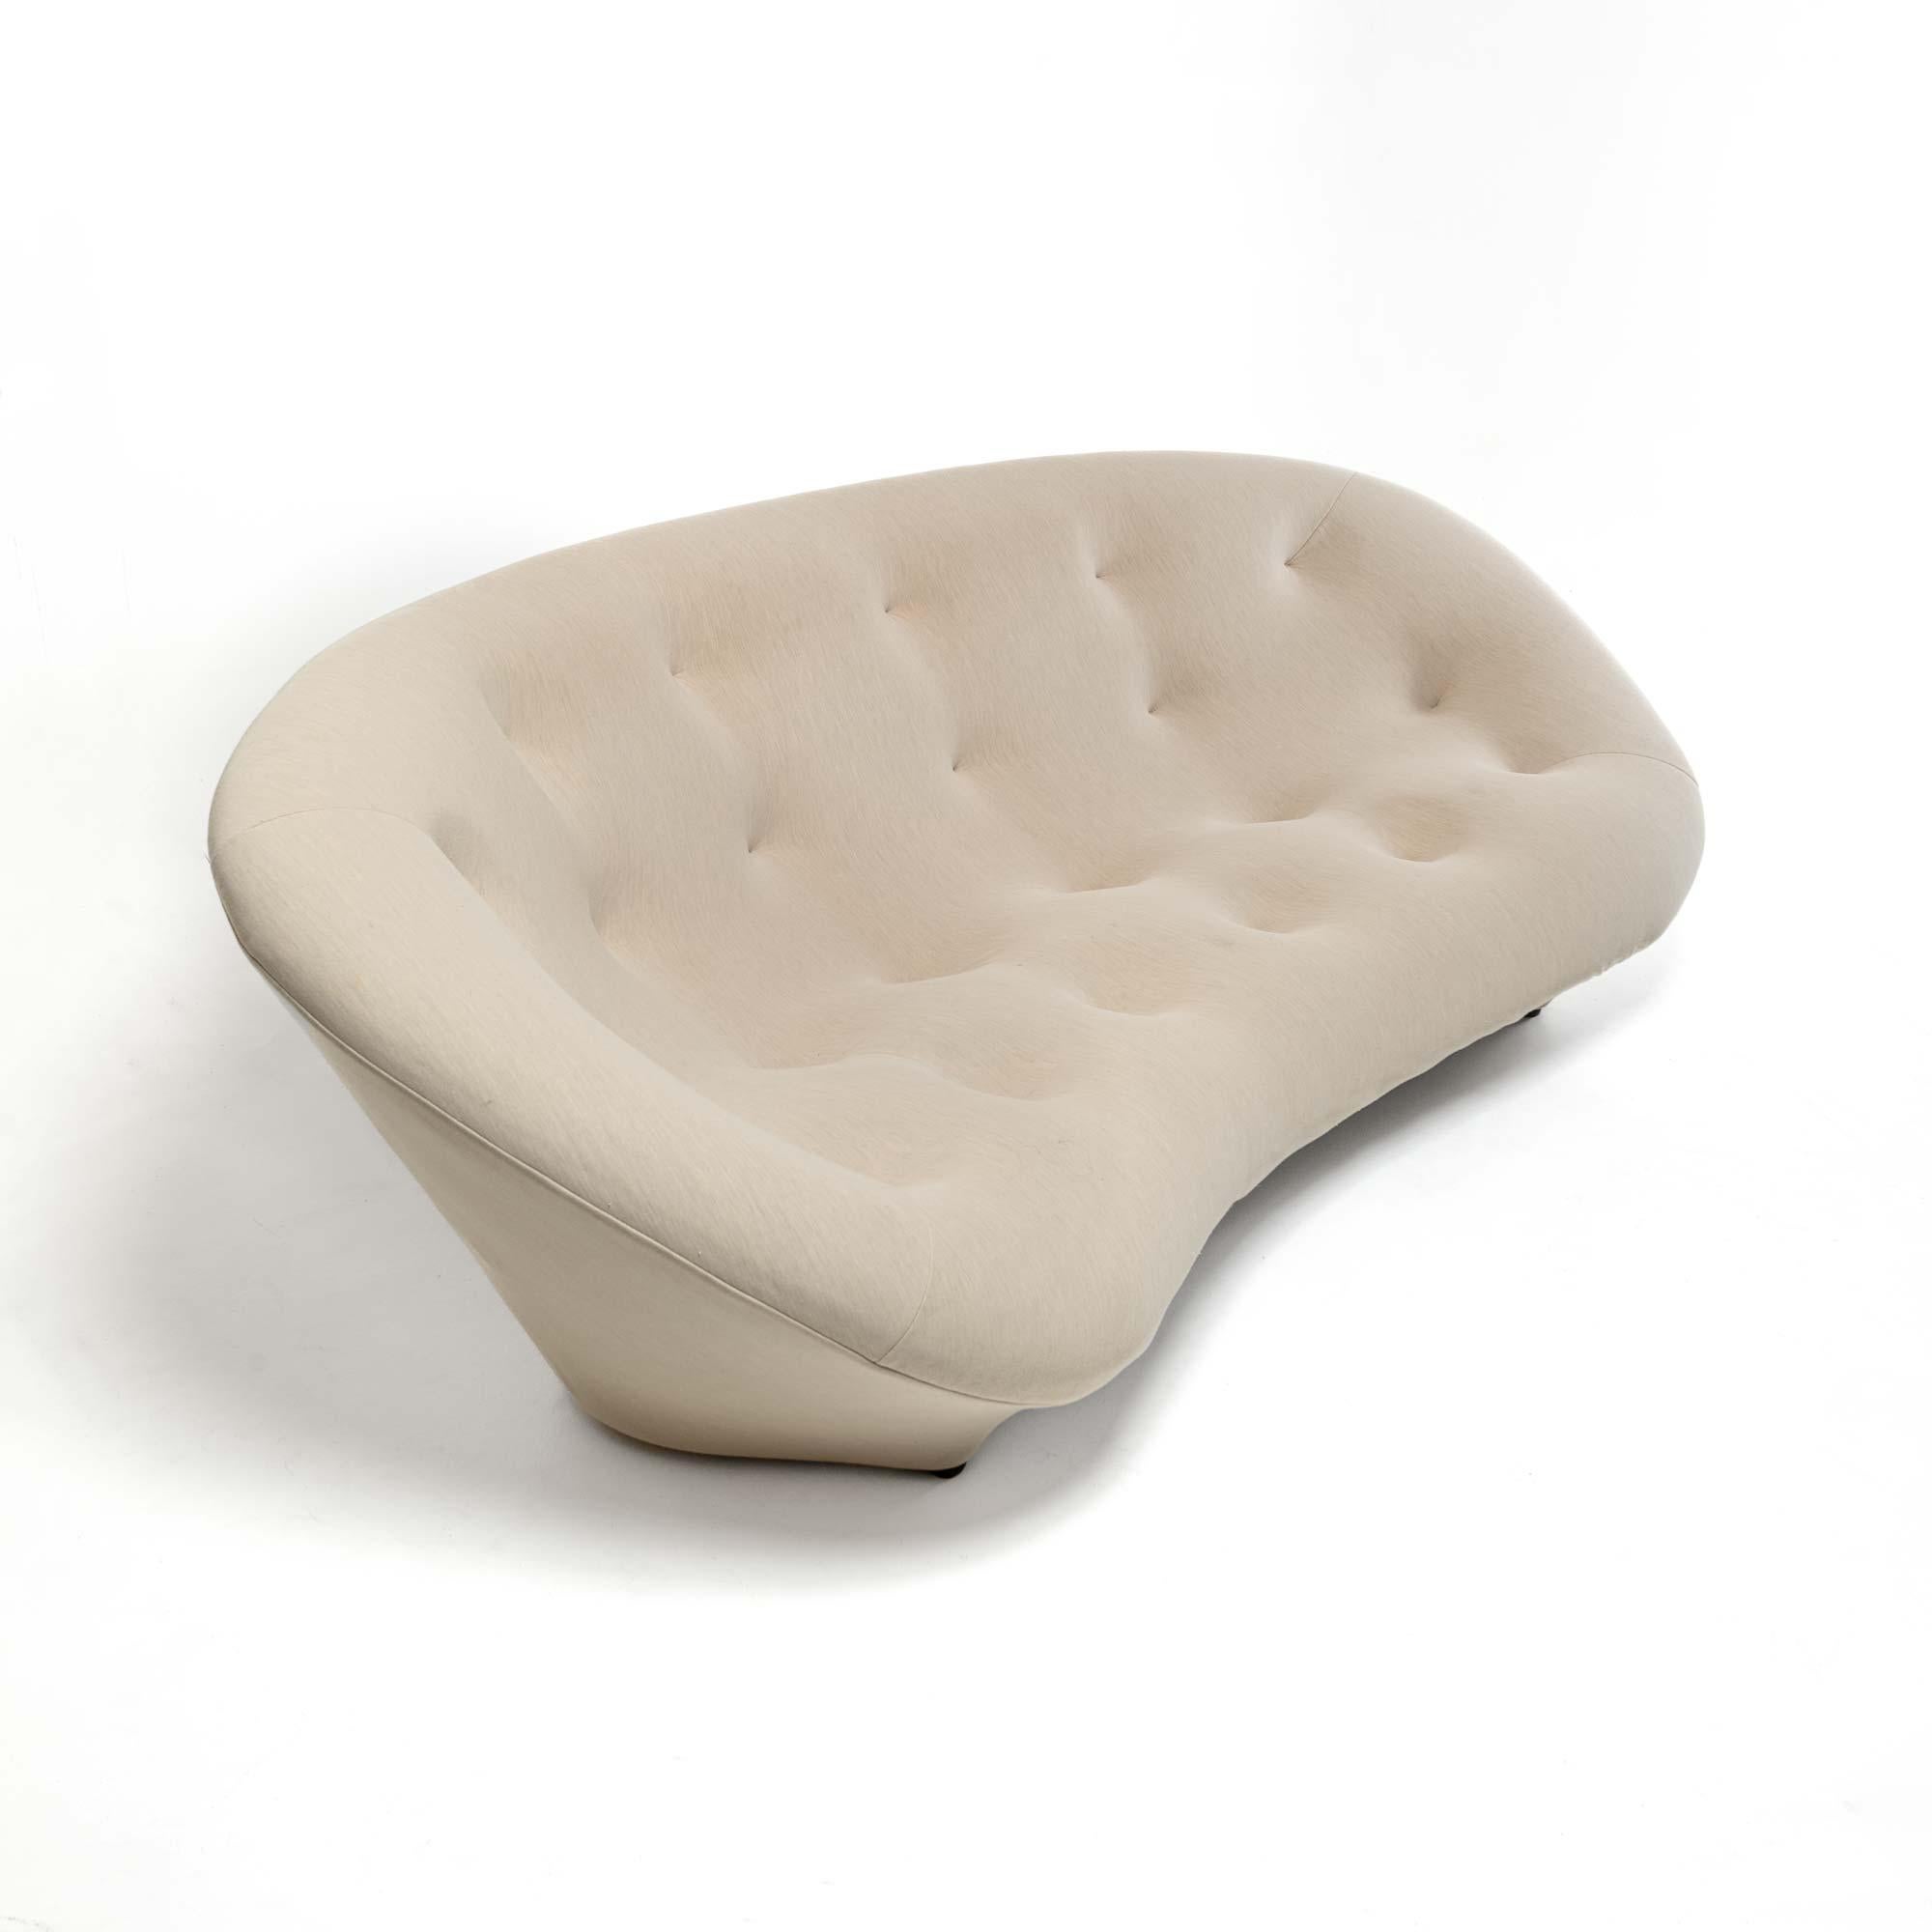 Les sièges Ploum sont le fruit d'une longue recherche sur le confort. Le résultat est une combinaison spéciale de deux matériaux : un revêtement extensible et une mousse ultra-douce. Cette combinaison, associée aux dimensions très généreuses des